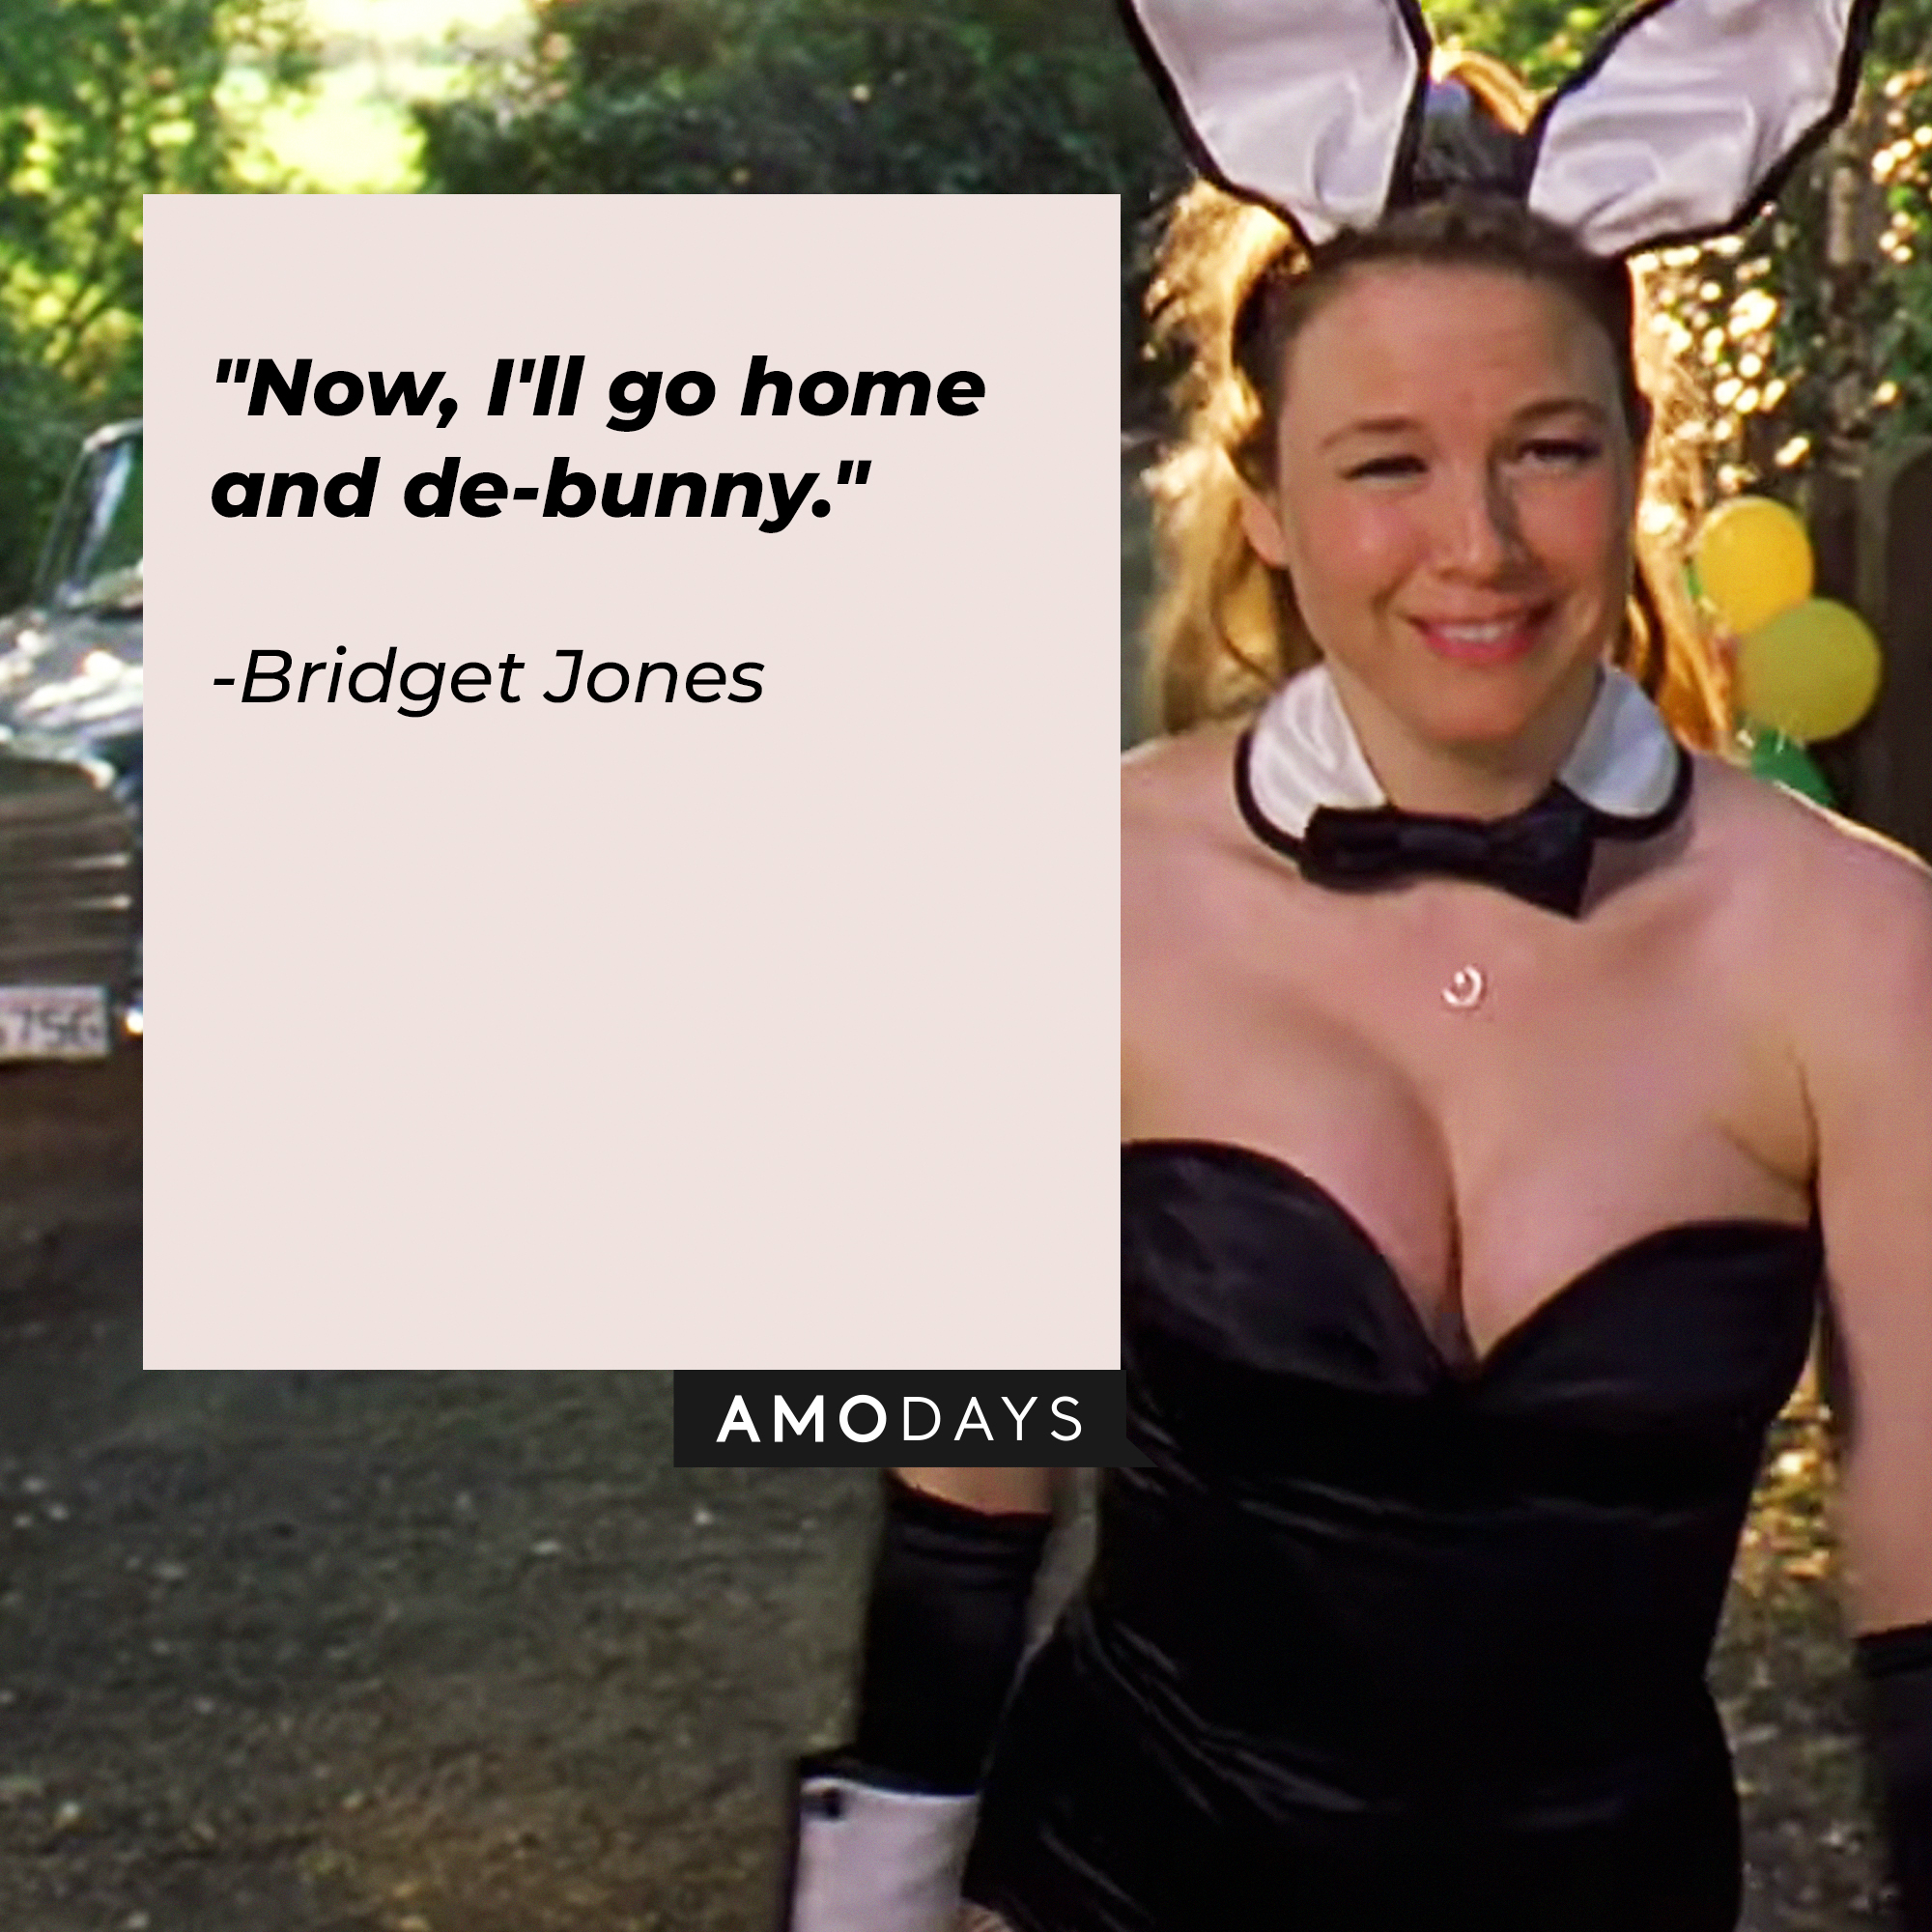 Bridget Jones with her quote in "Bridget Jones's Diary:" "Now, I'll go home and de-bunny." | Source: Facebook/BridgetJonessDiary